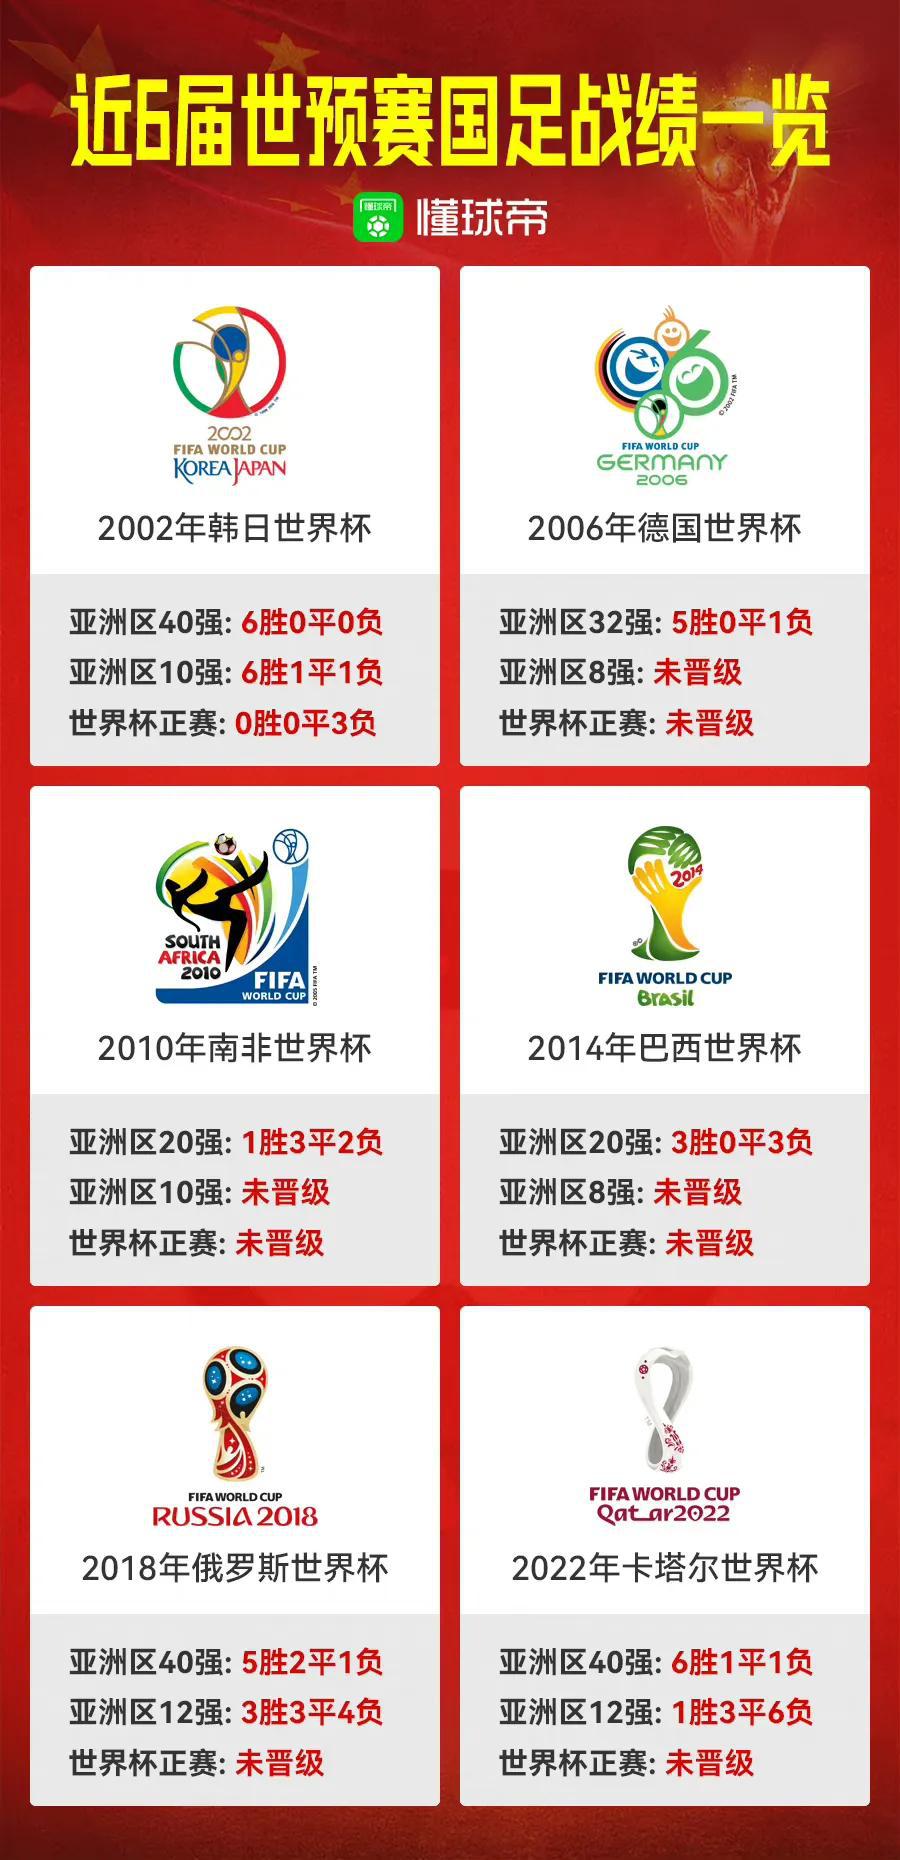 懂球帝发布的中国男足20年成绩单...2026年我们能进世界杯吗？

看得中国球